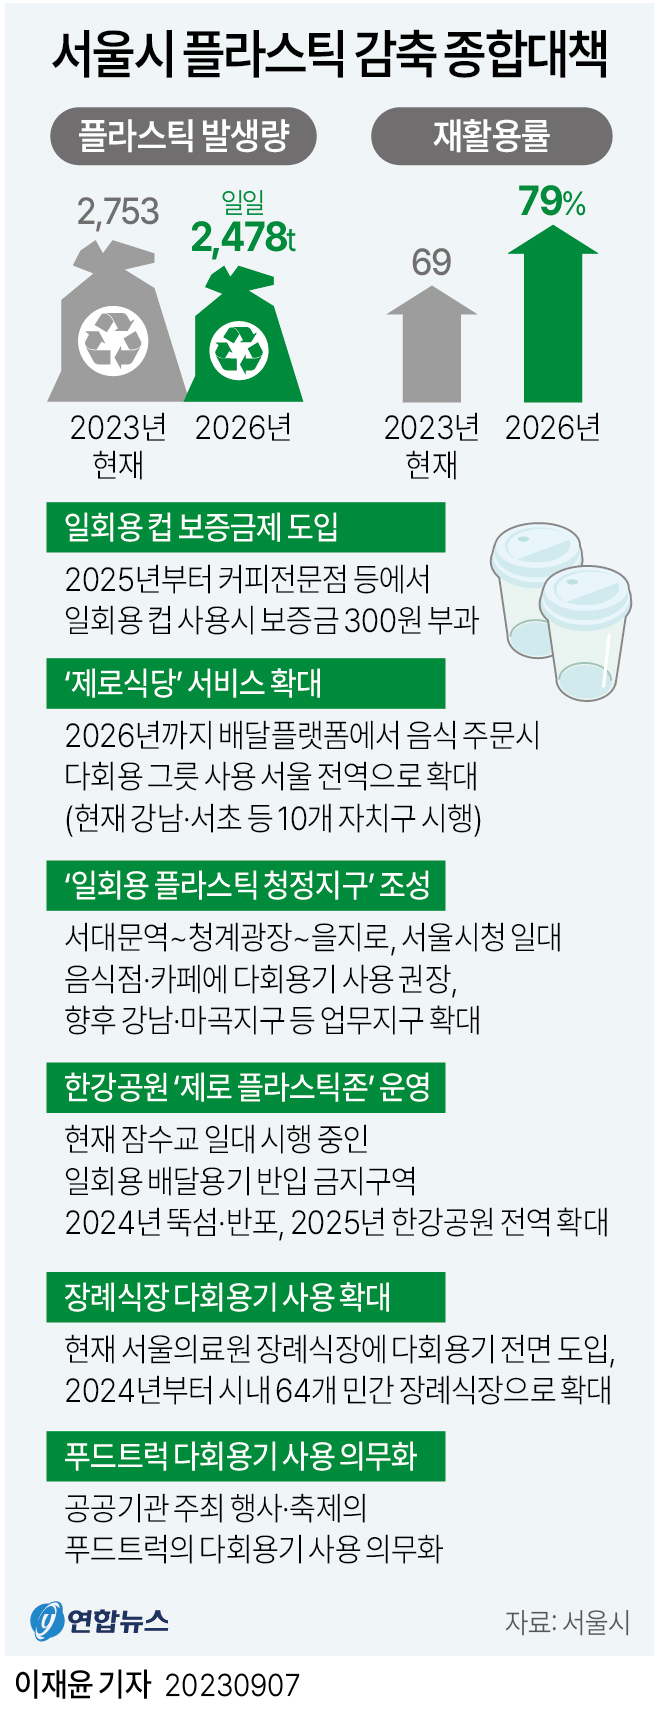 [그래픽] 서울시 플라스틱 감축 종합대책